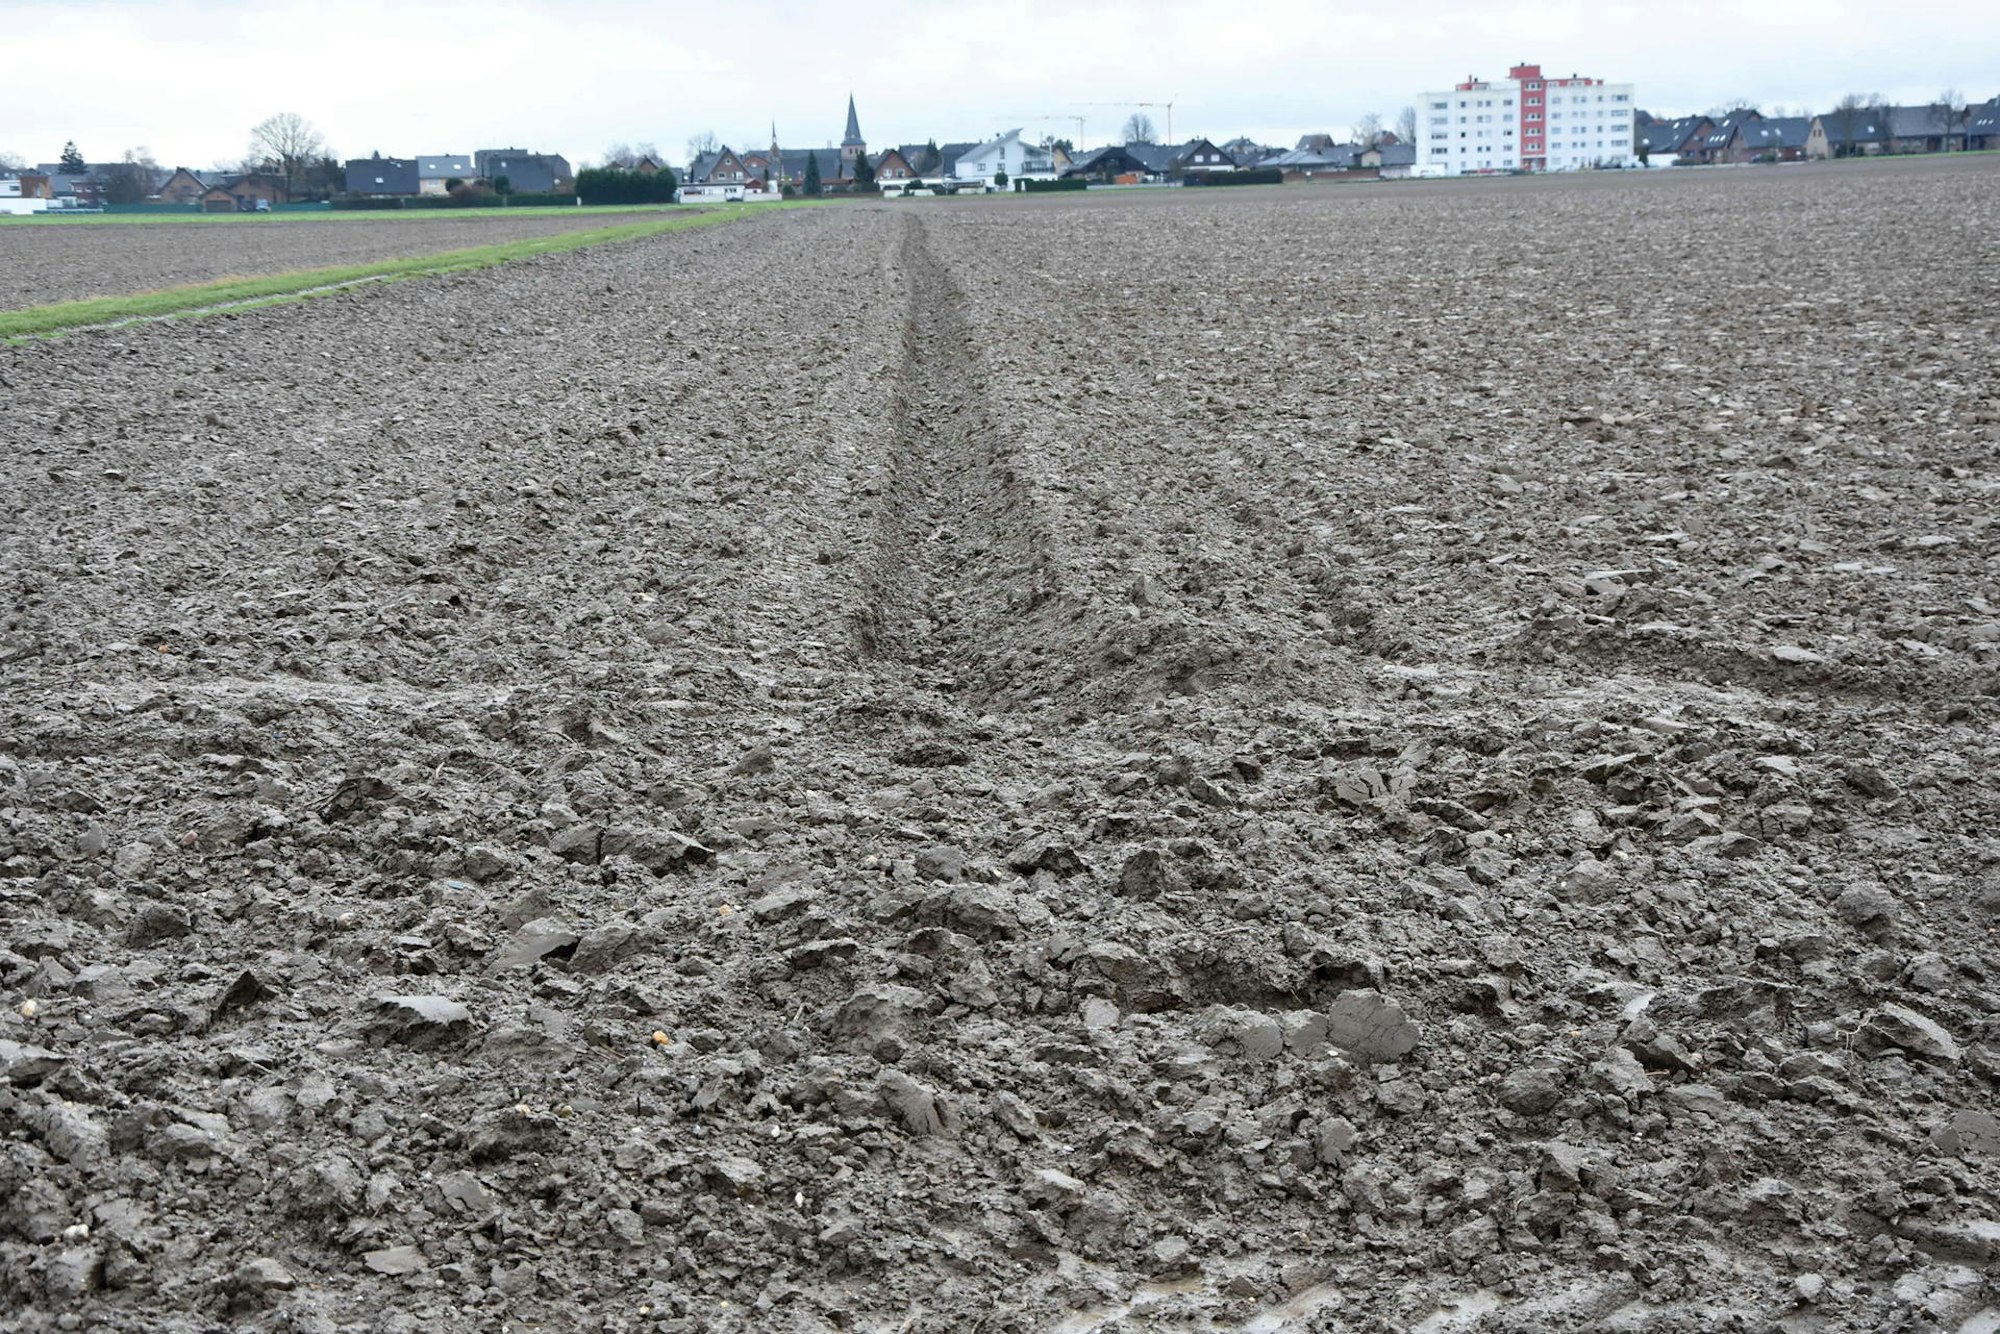 Gute Lössböden sorgen im Rheinland für durchweg hohe Erträge.